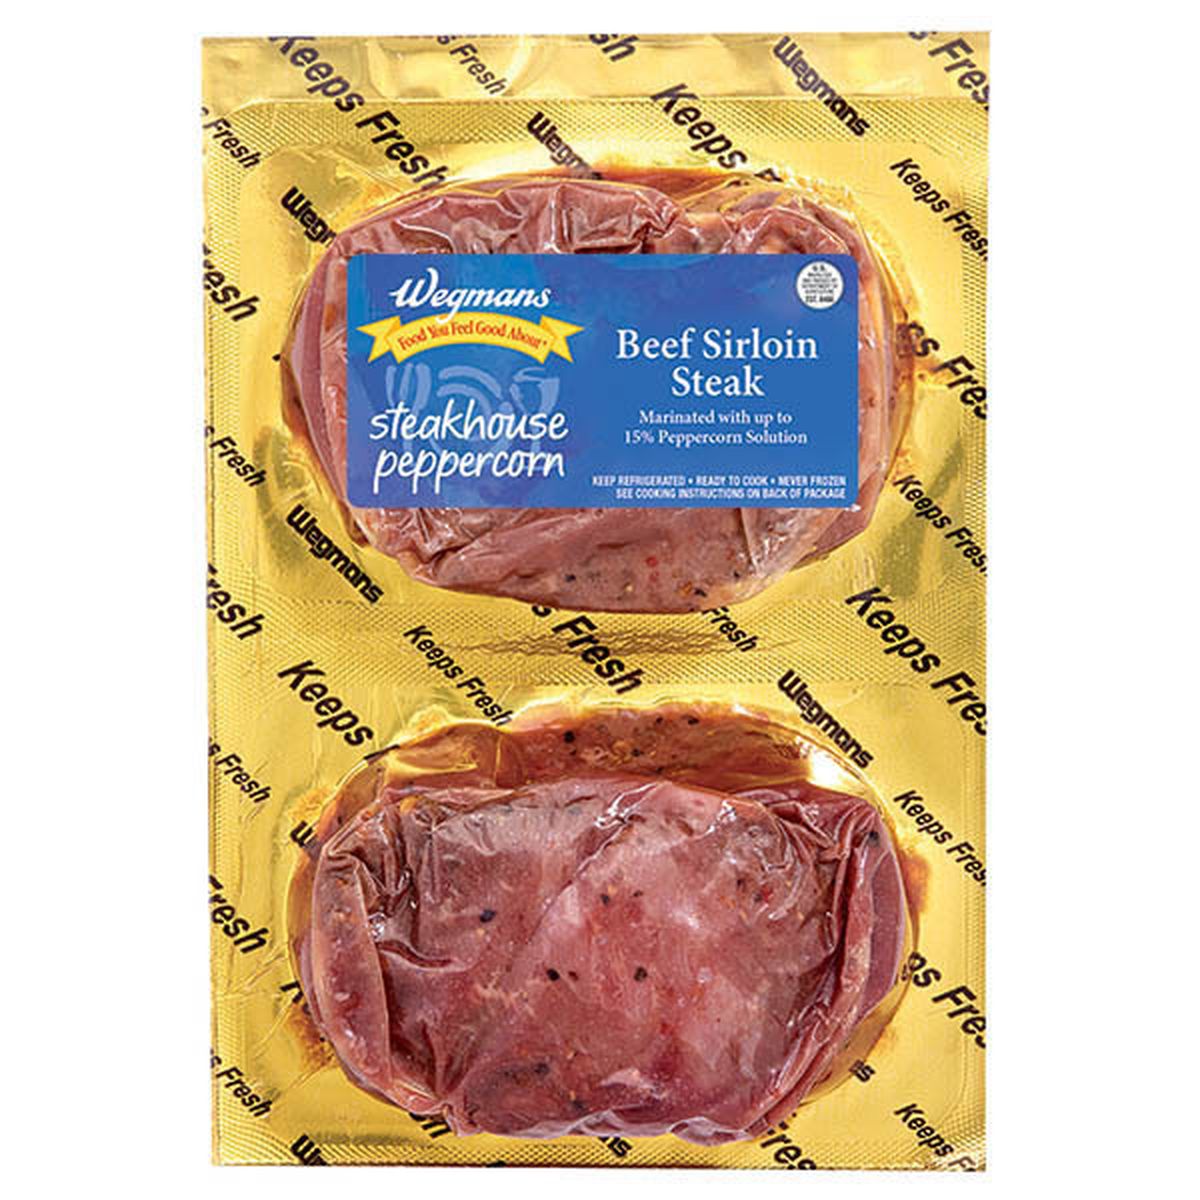 Calories in Wegmans Peppercorn  Marinated Beef Sirloin Steak